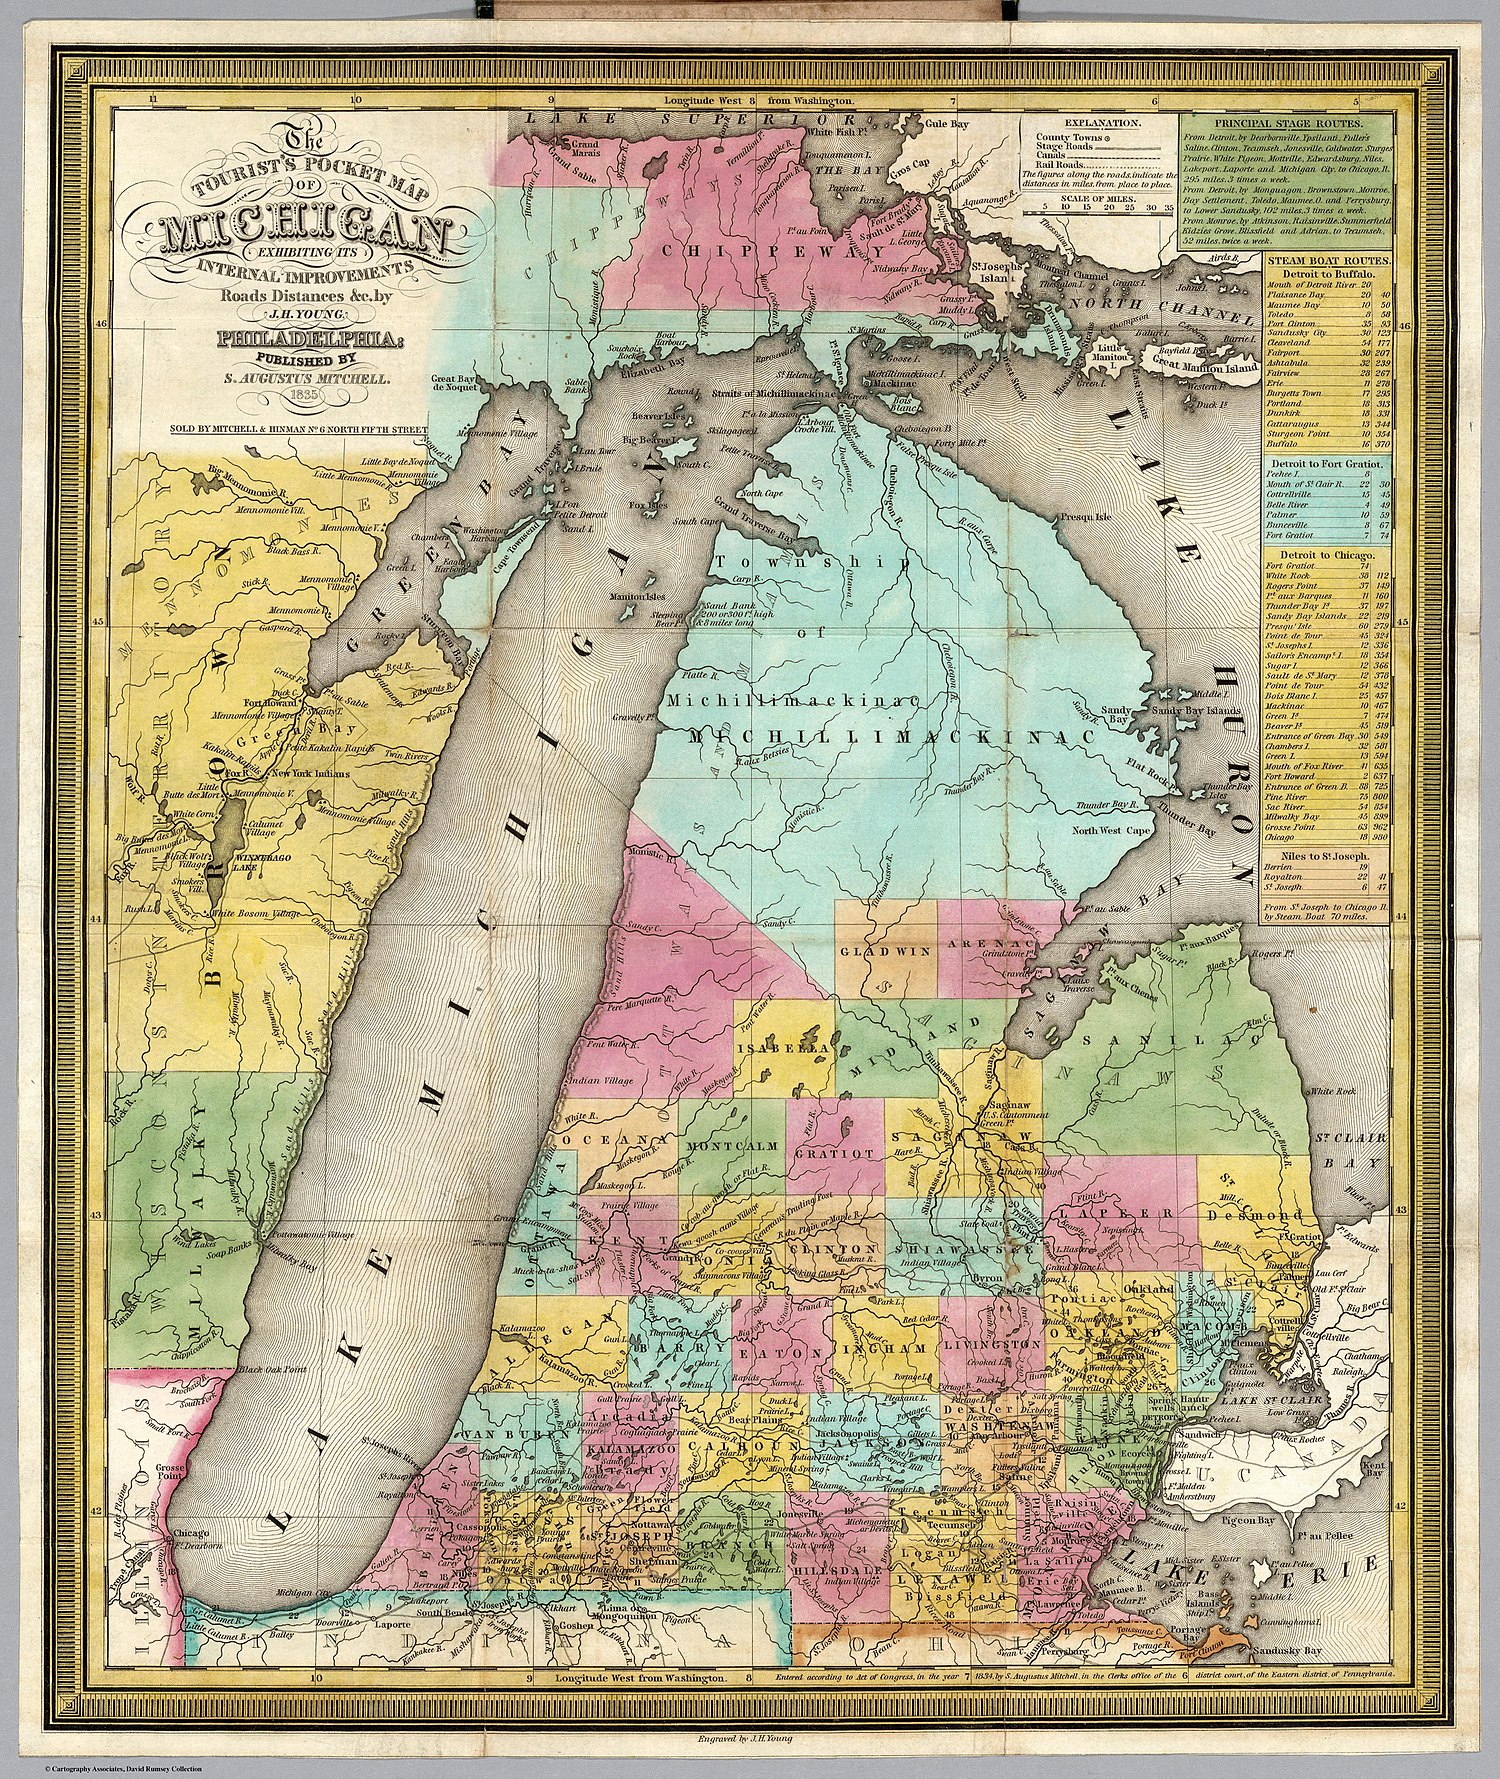 Територија Висконсин приказана на Туристичкој џепној карти Мичигена из 1835, укључује Округ Браун настањен Меноминима, који се простирао на северној половини територије.